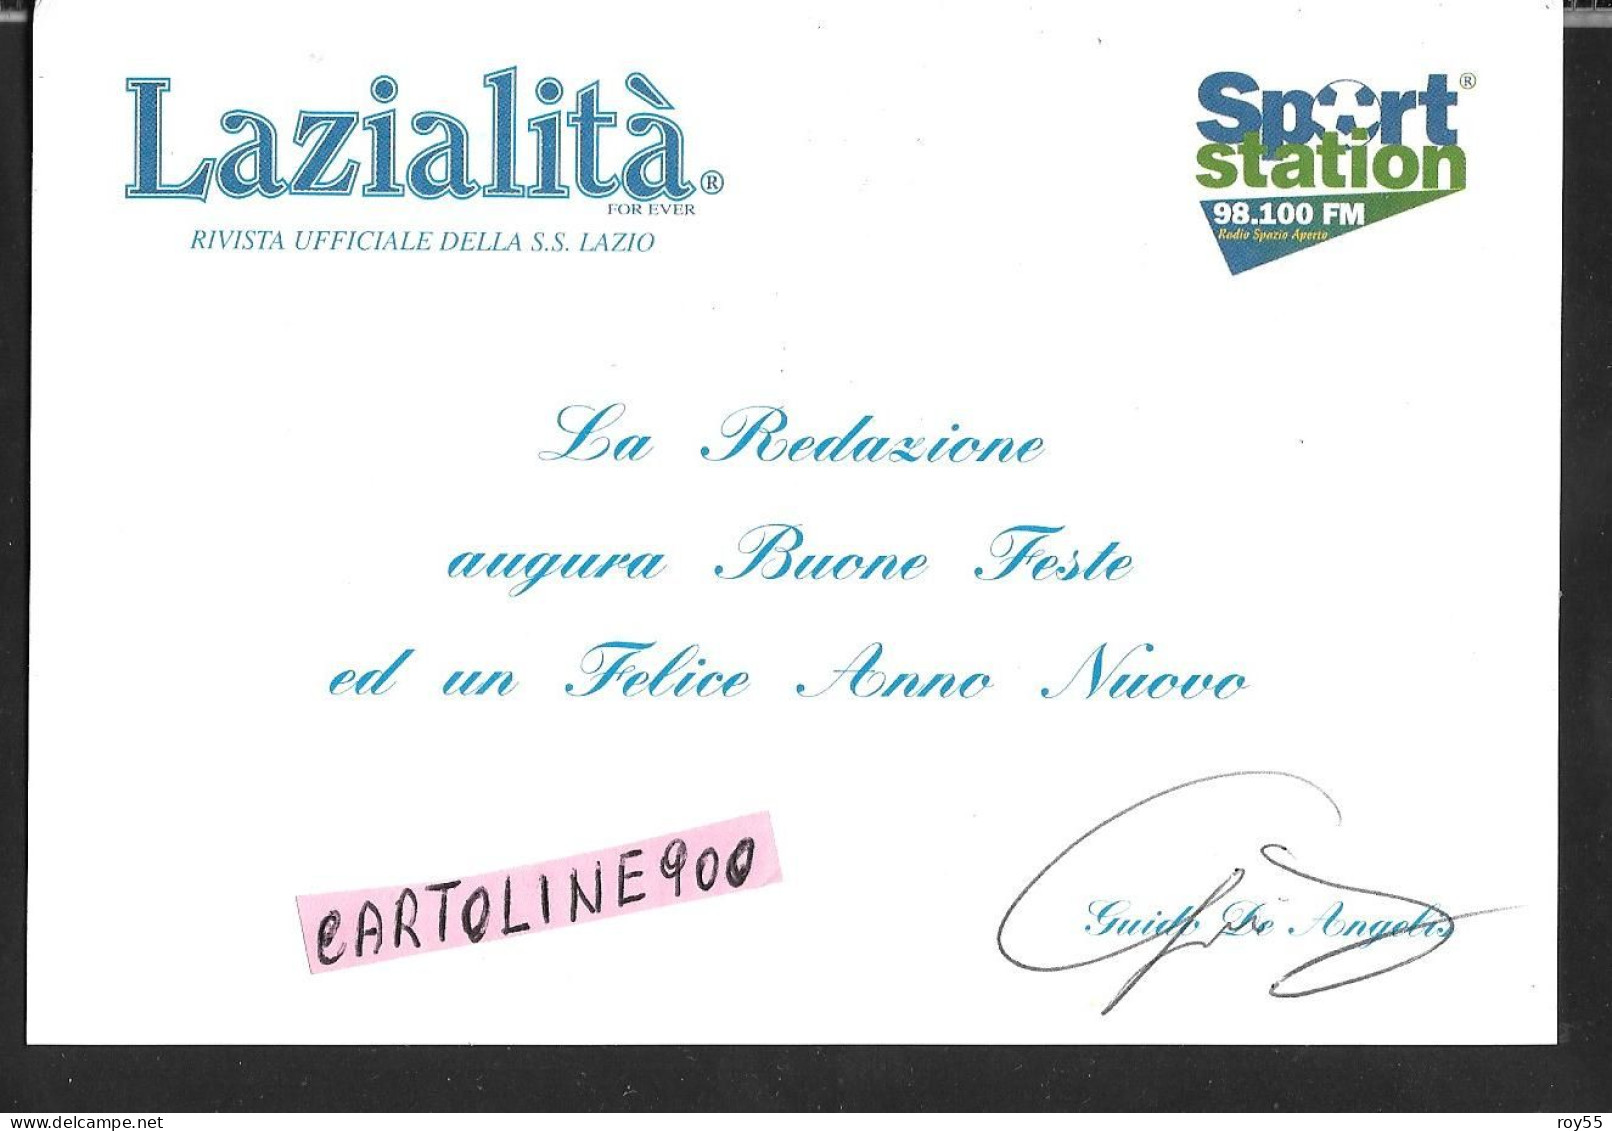 Sport Calcio Lazialita For Ever Rivista Ufficiale Ss Lazio Calcio 1900 Sport Station 98.100 Fm Di Guido De Angelis - Fussball